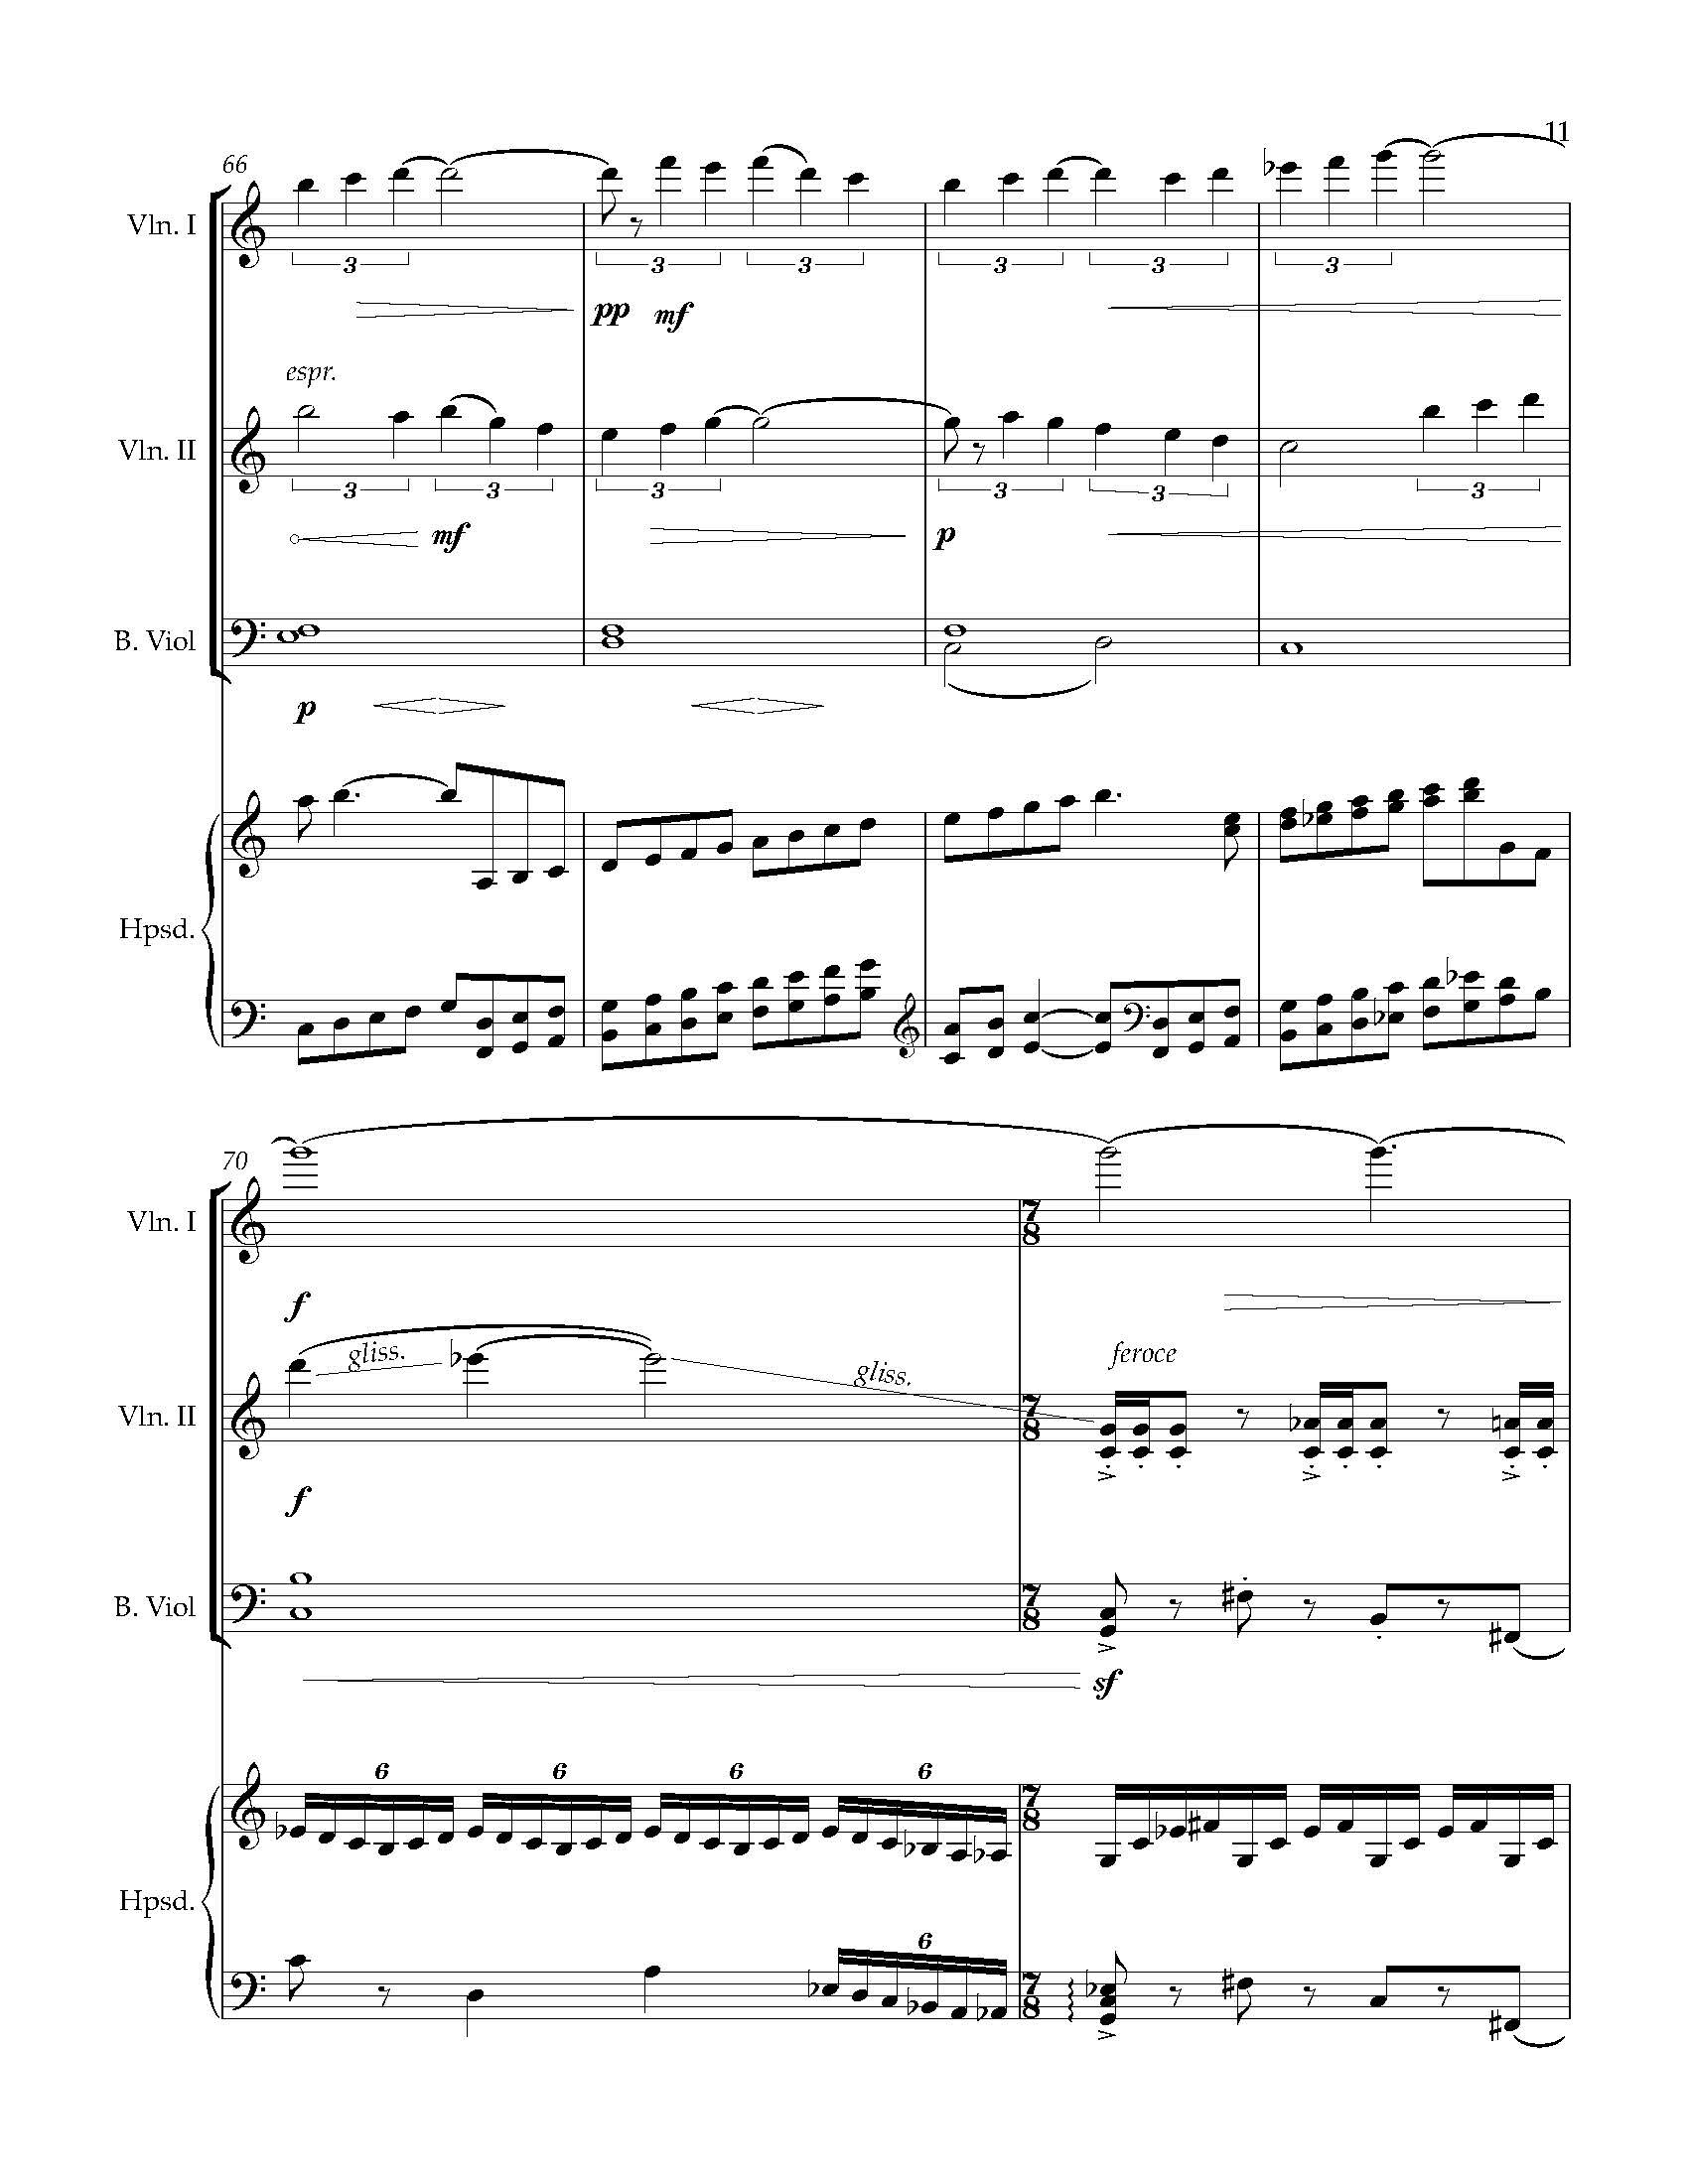 Sonata Sonare - Complete Score_Page_17.jpg